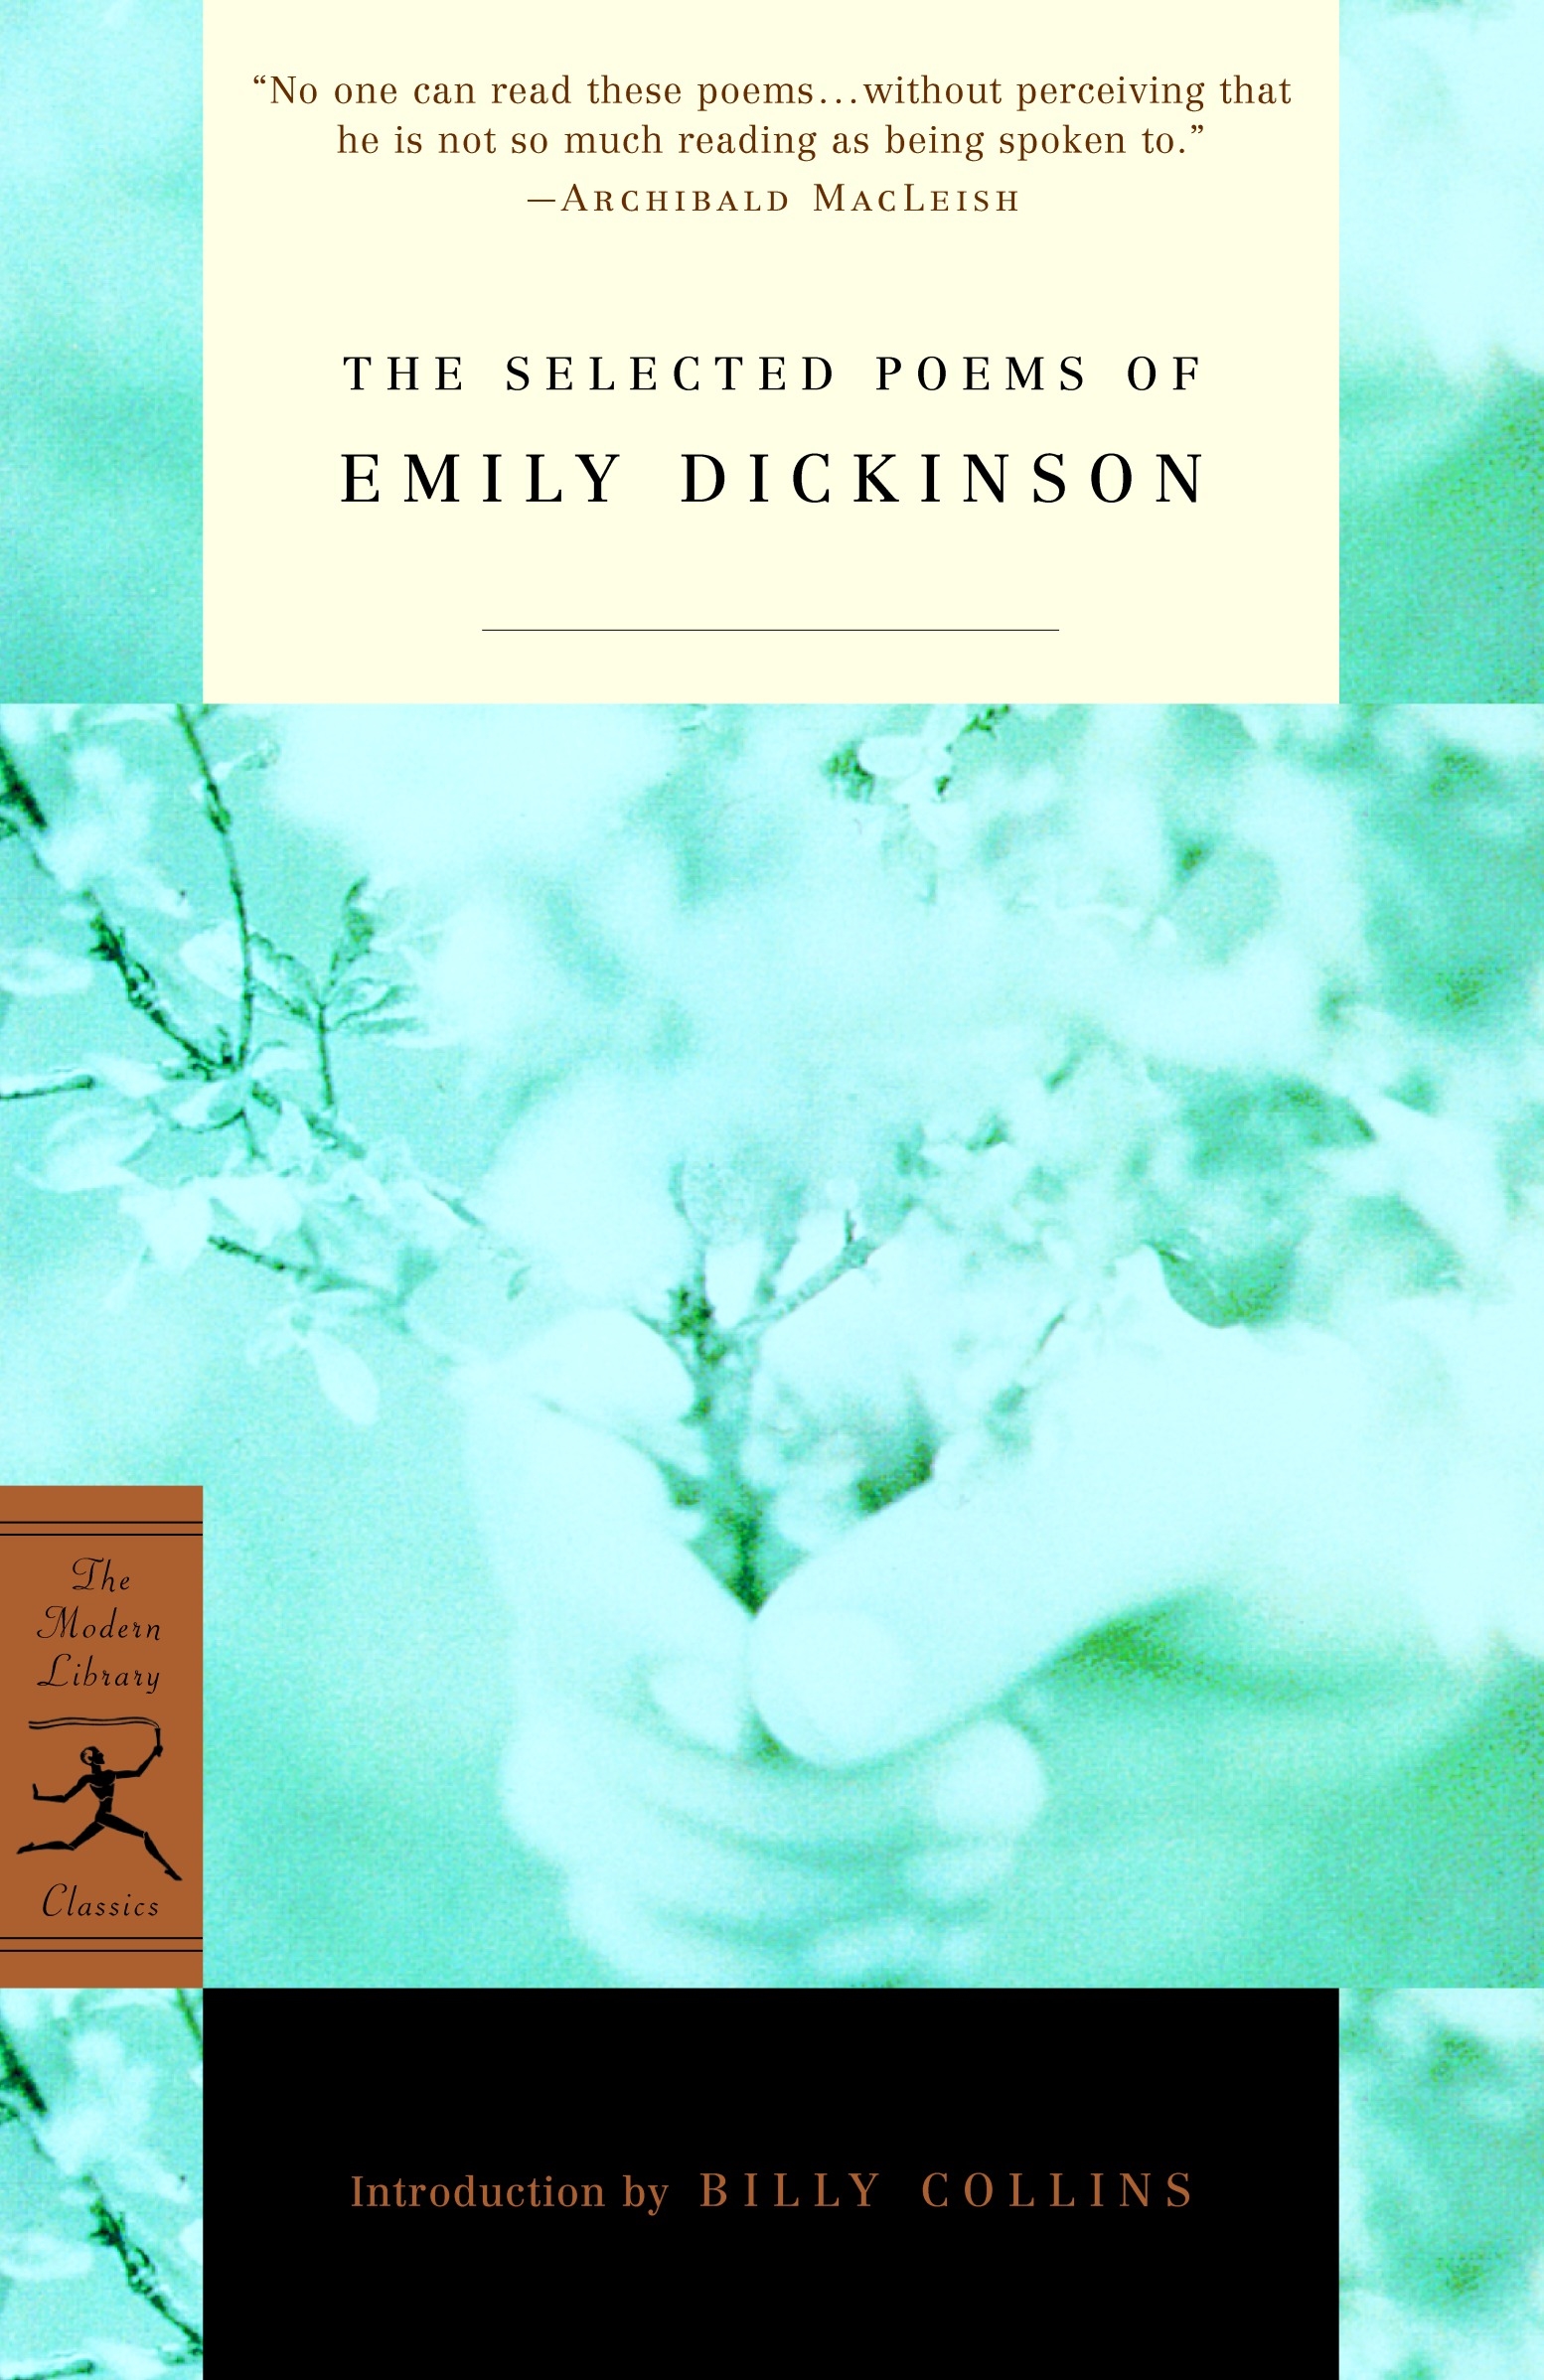 emily dickinson literary analysis